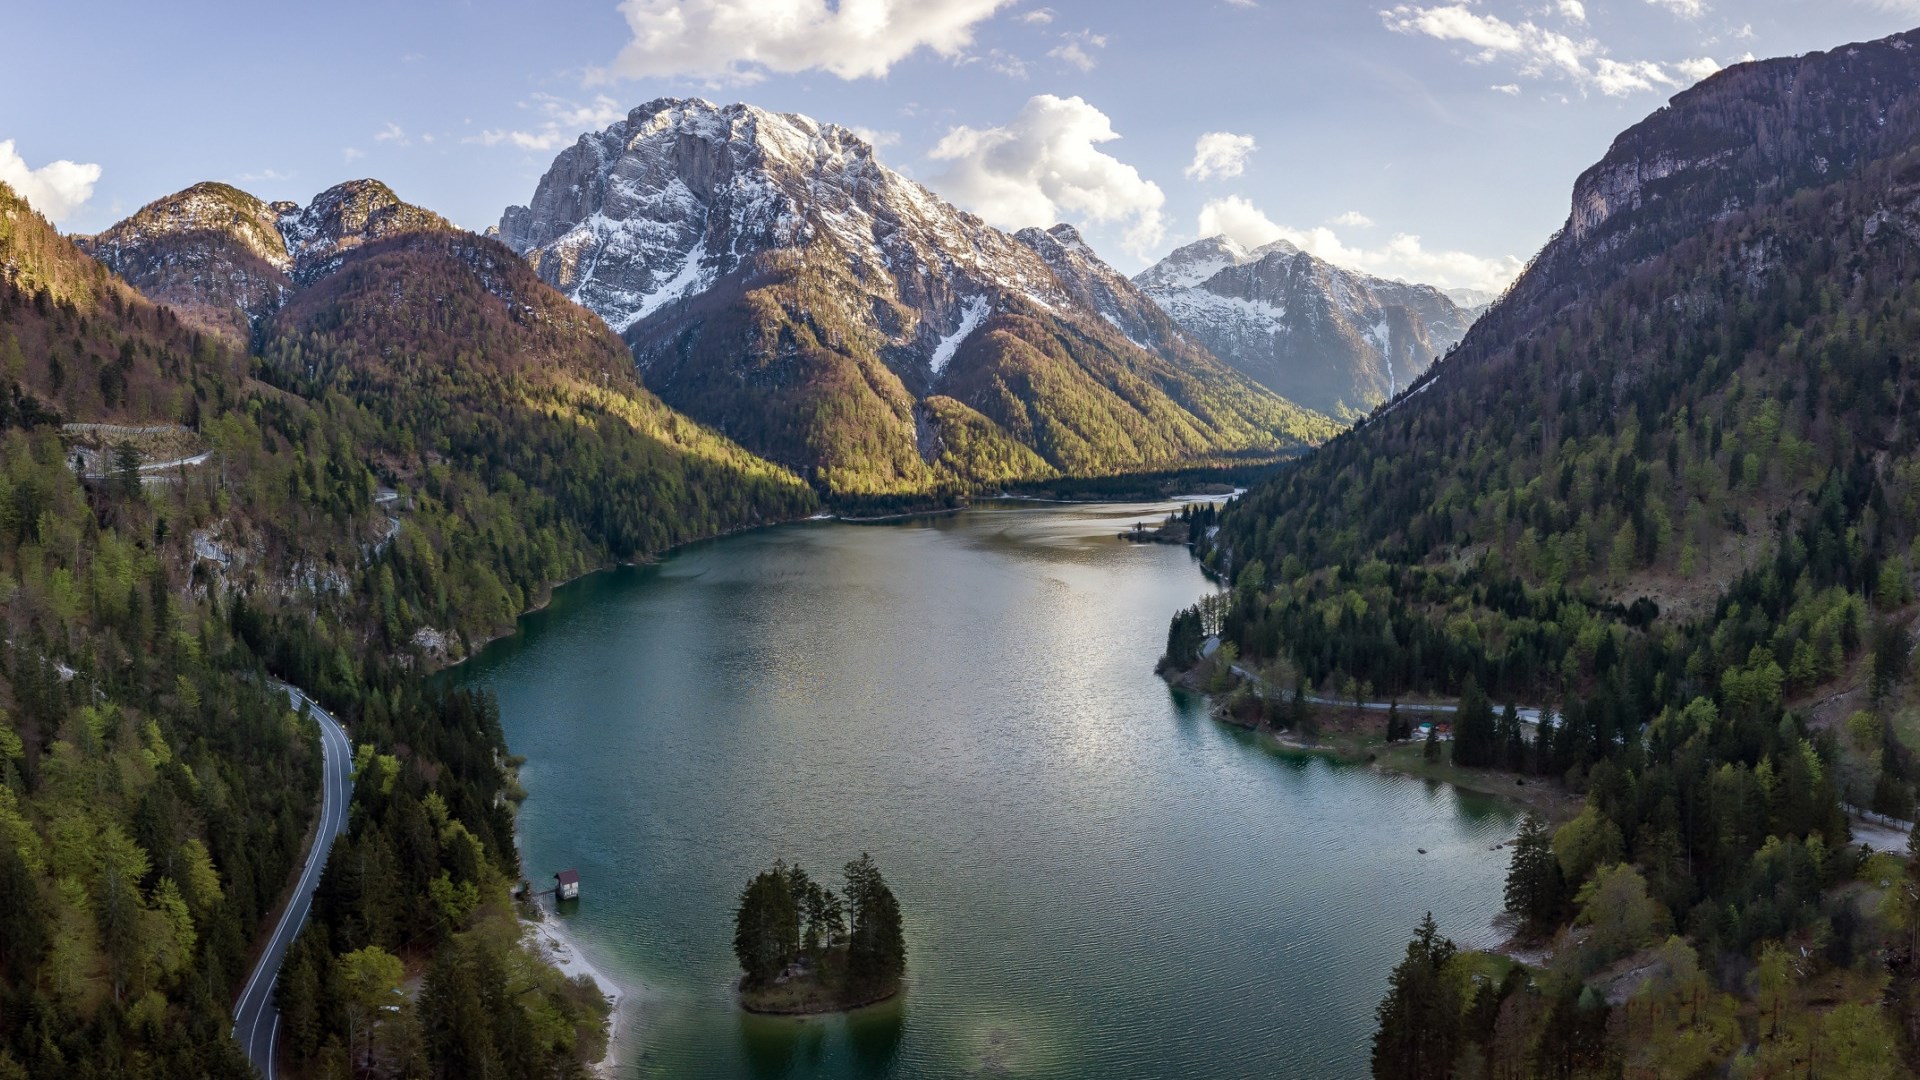 تصویر تحسین برانگیز دریاچه پهناور میان کوه ها برای پروفایل علاقمندان طبیعت